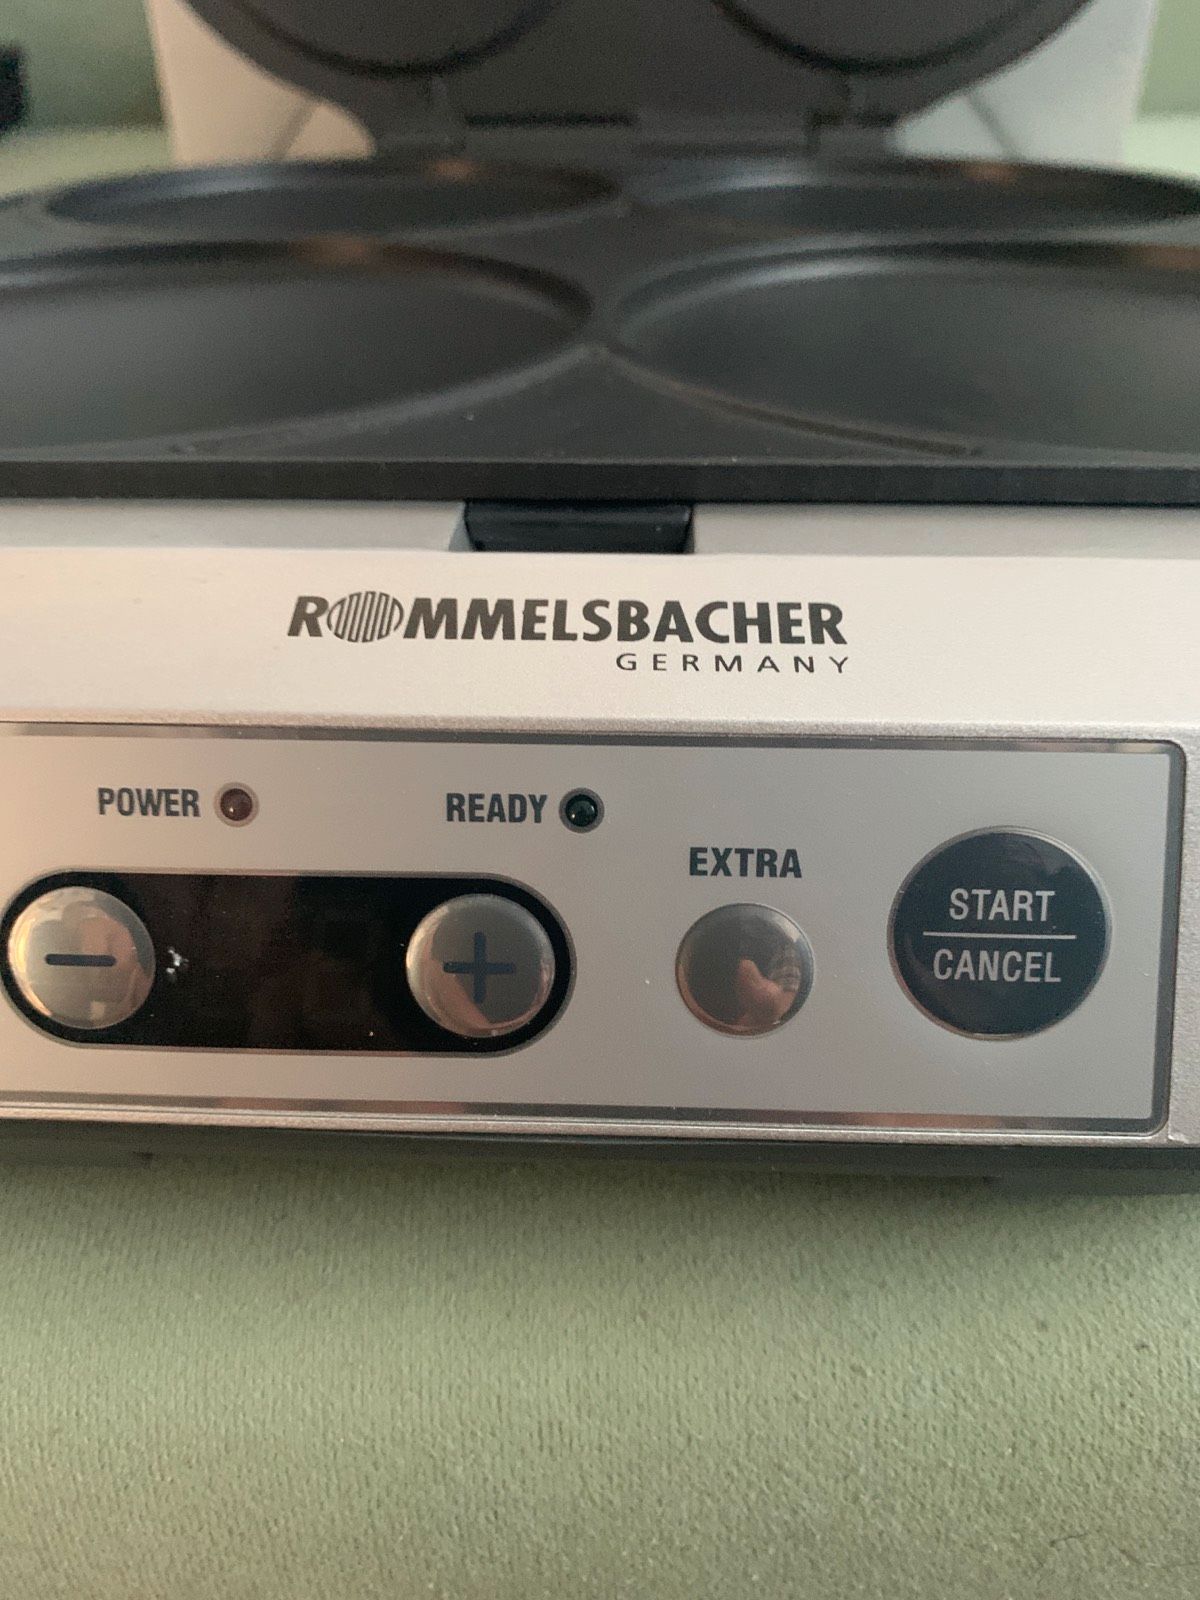 ROMMELSBACHER PC 1800 Pancake Maker Qualität